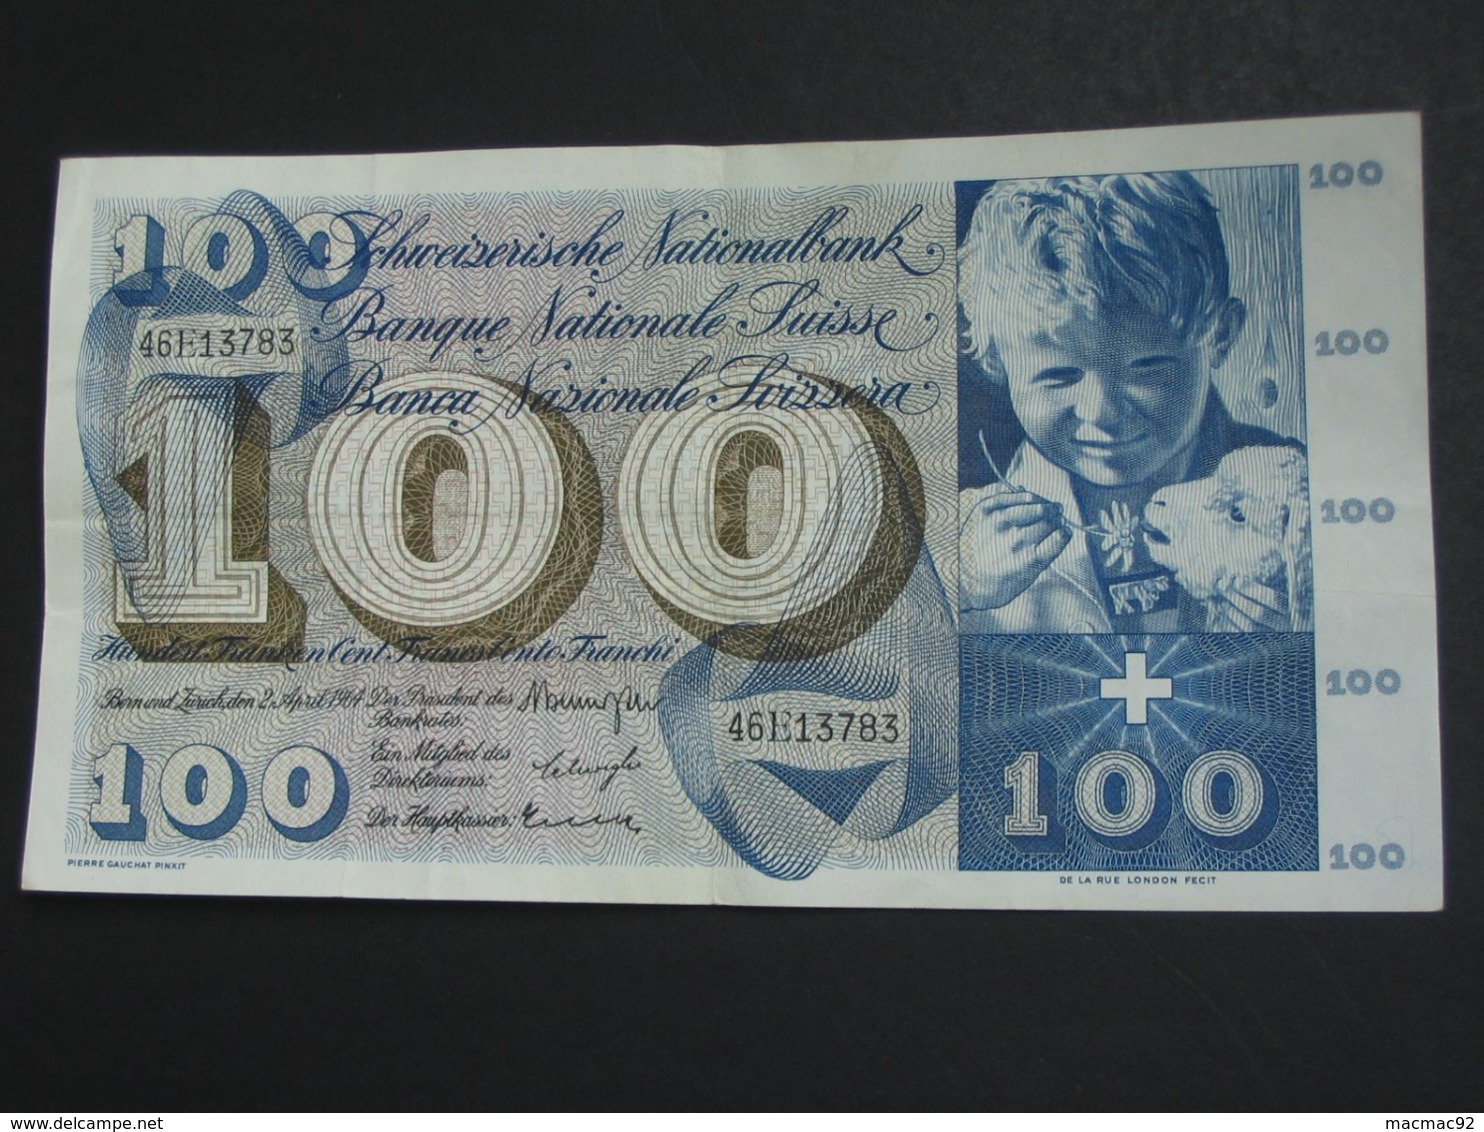 100 Francs SUISSE 2 Avril 1964 - Banque Nationale Suisse - Schweizerische Nationalbank  **** EN ACHAT IMMEDIAT **** - Zwitserland